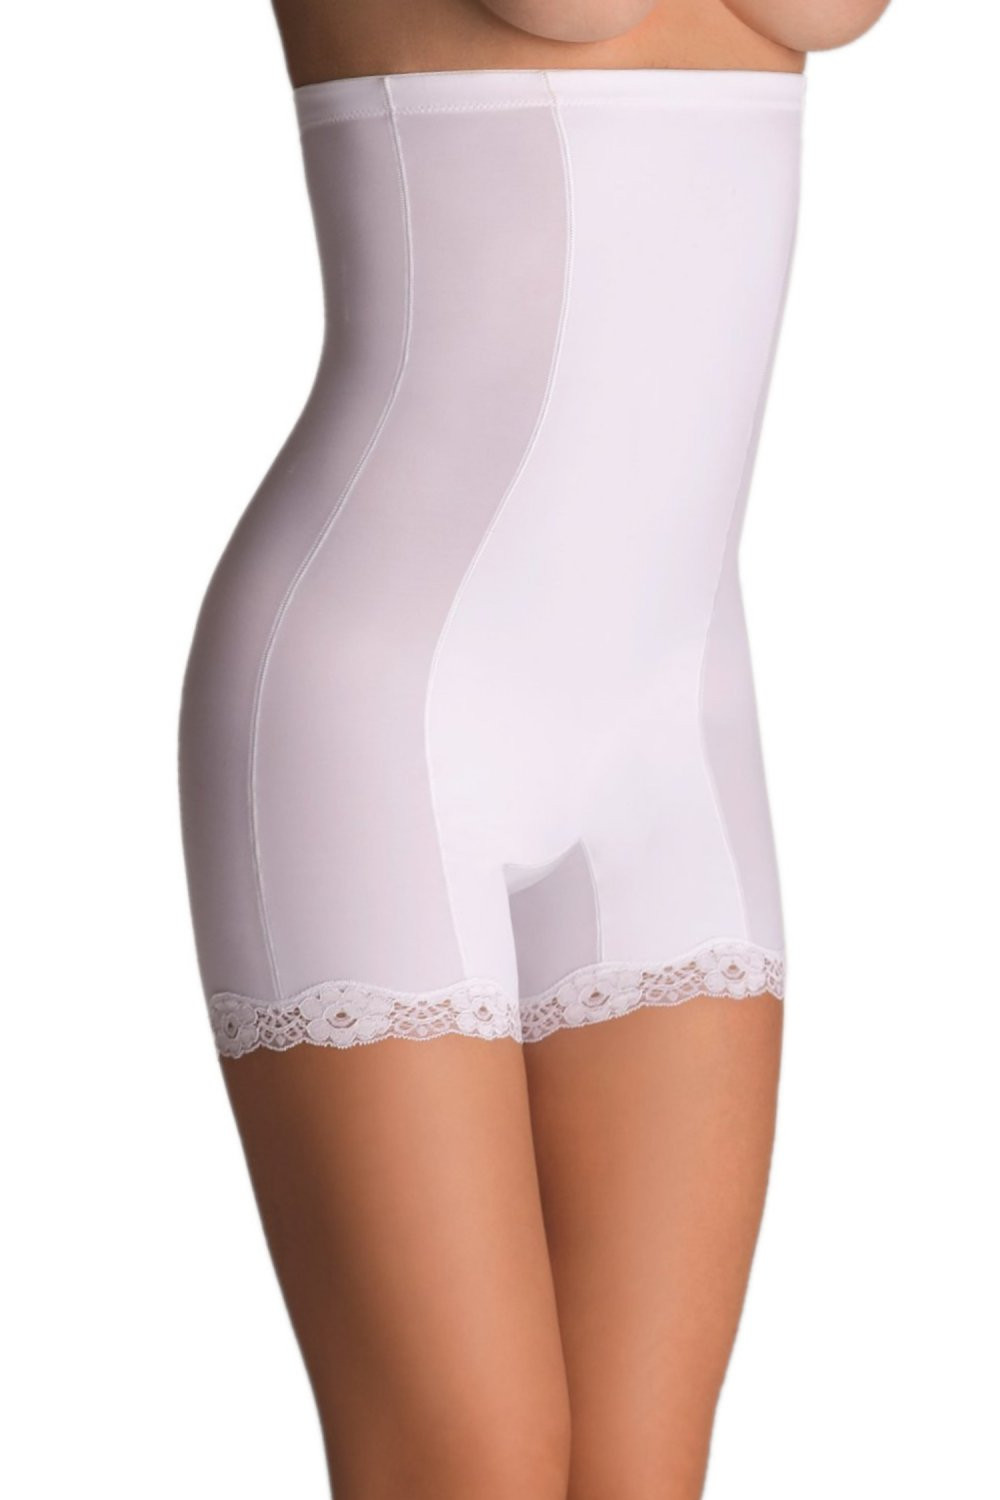 Stahovací kalhotky Vanessa white - ELDAR Bílá XL